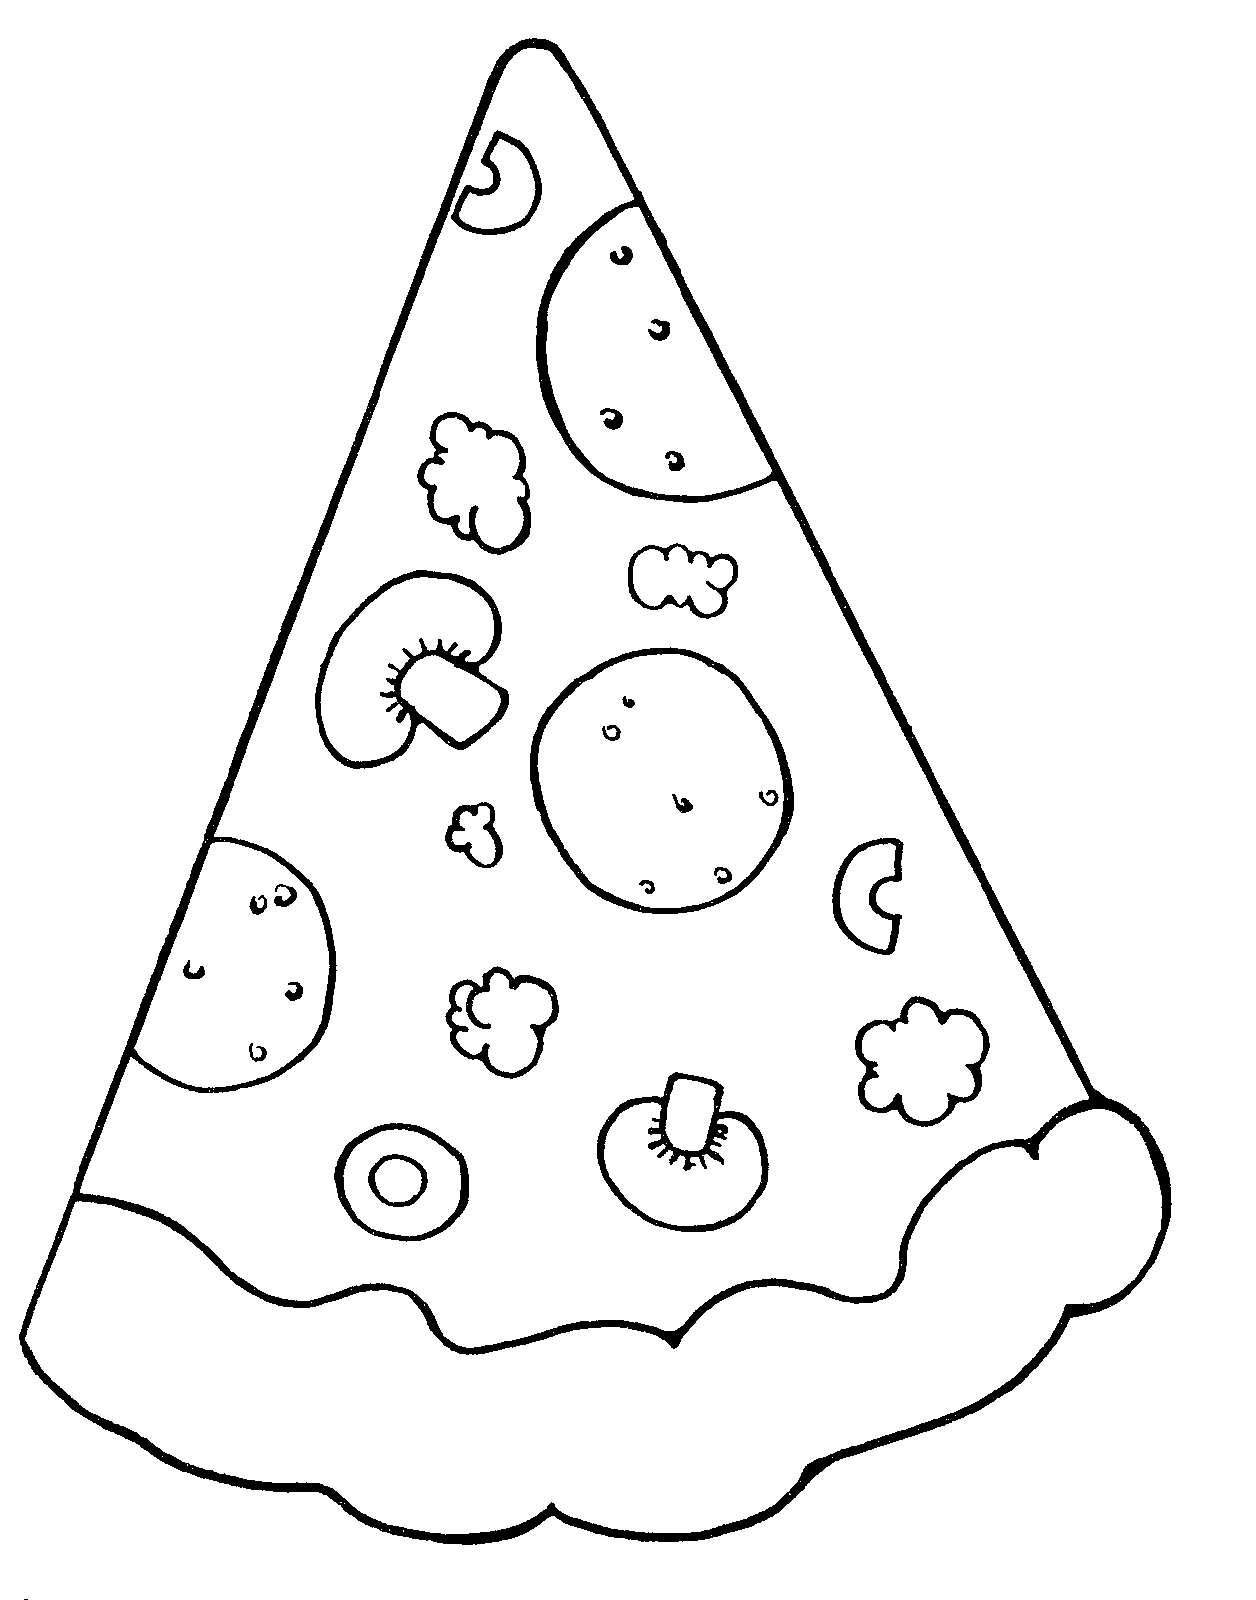 Pizza clip art black and white